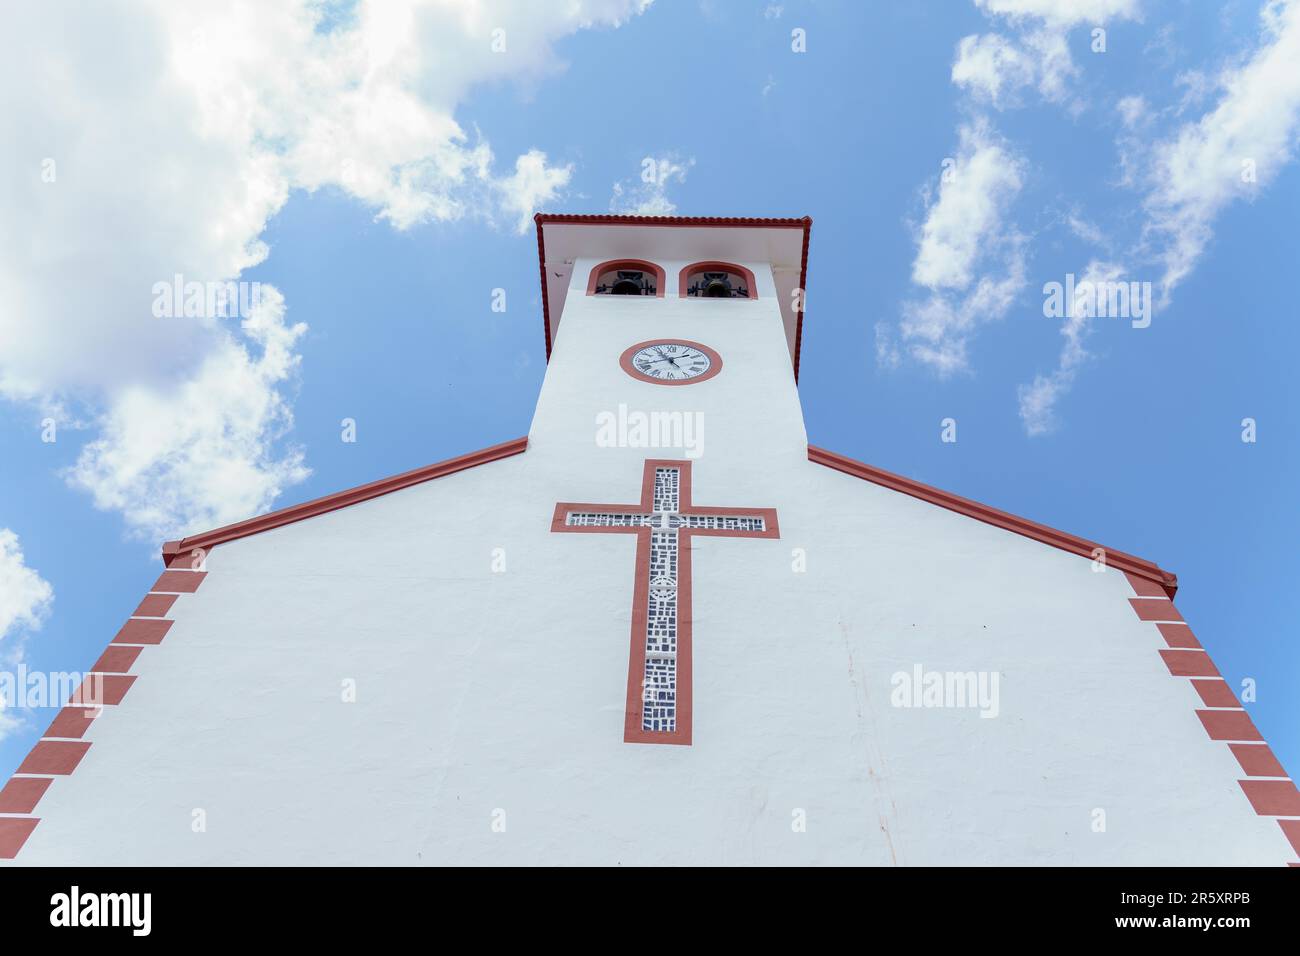 Elegante religiöse Architektur unter einem bewölkten Himmel, die spirituelle Symbolik und Design zeigt Stockfoto